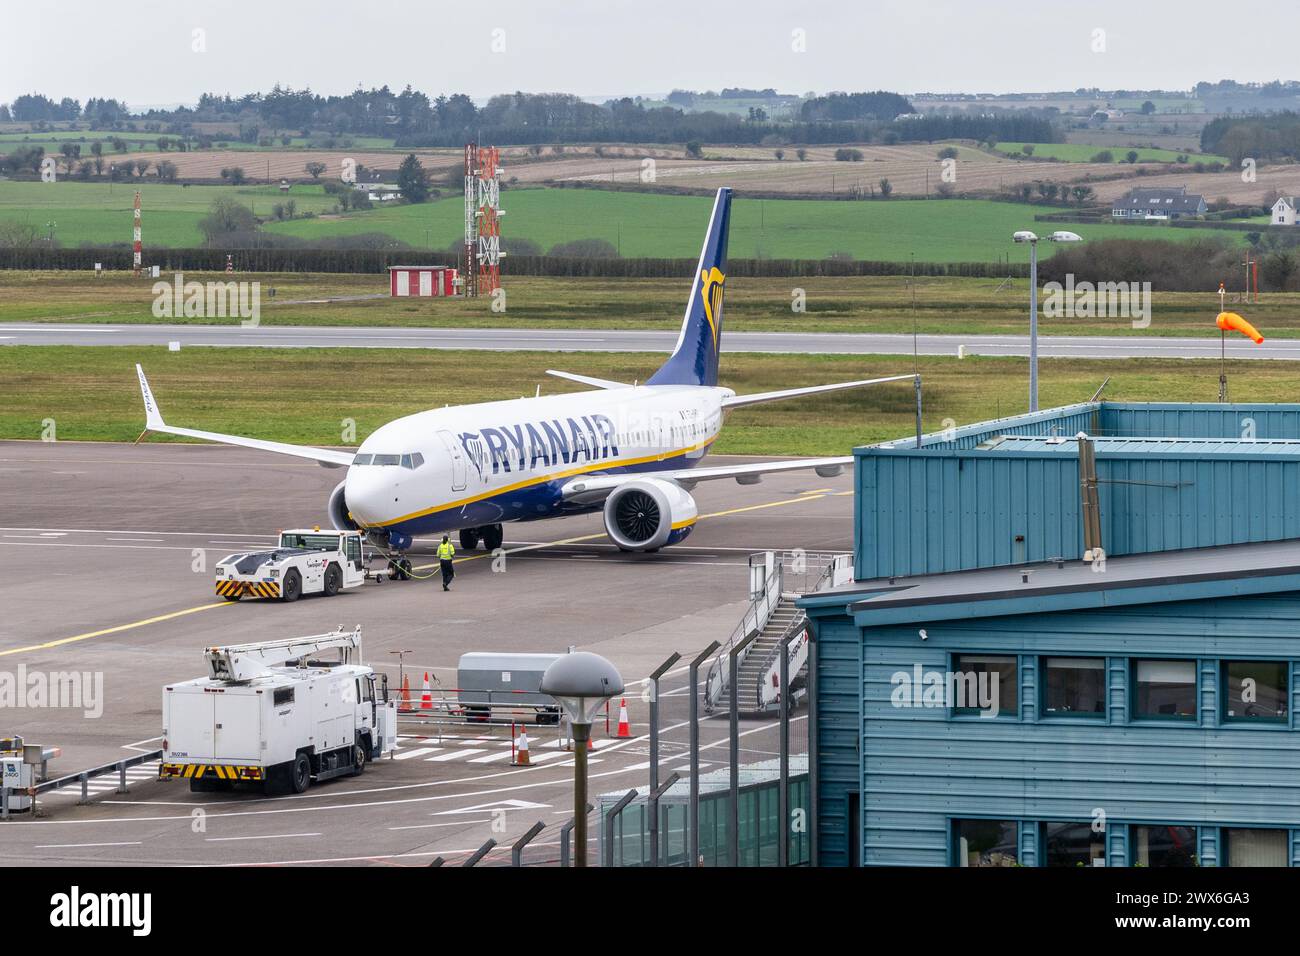 Ryanair Boeing 737 MAX 8-200 aircraft pushes back at Cork Airport, Cork, Ireland. Stock Photo